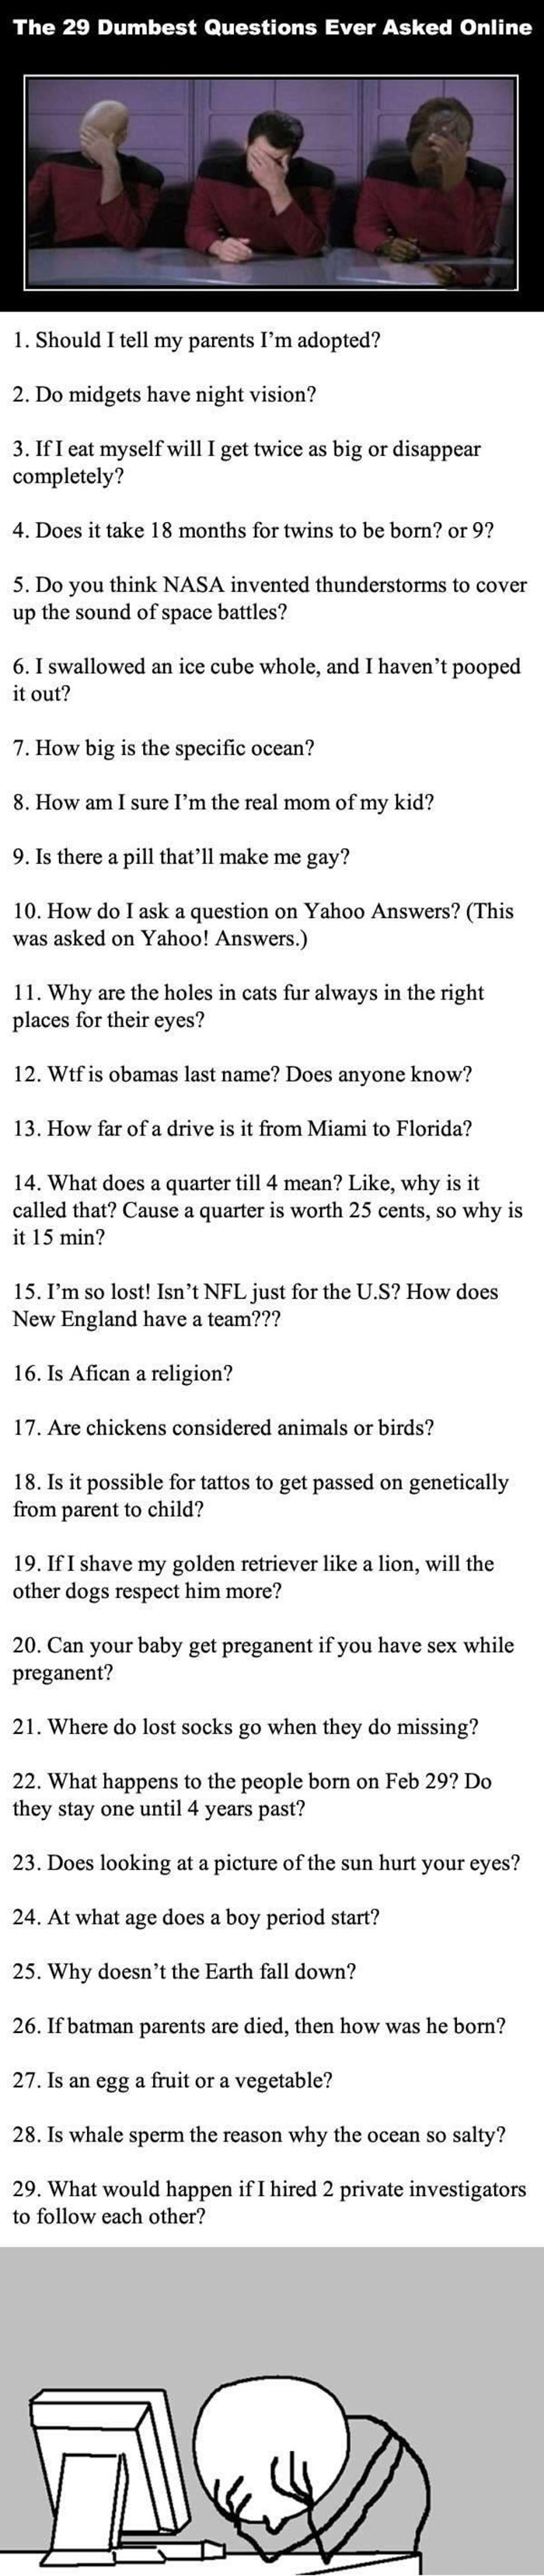 Top 29 najglupljih pitanja ikad postavljenih na internetu